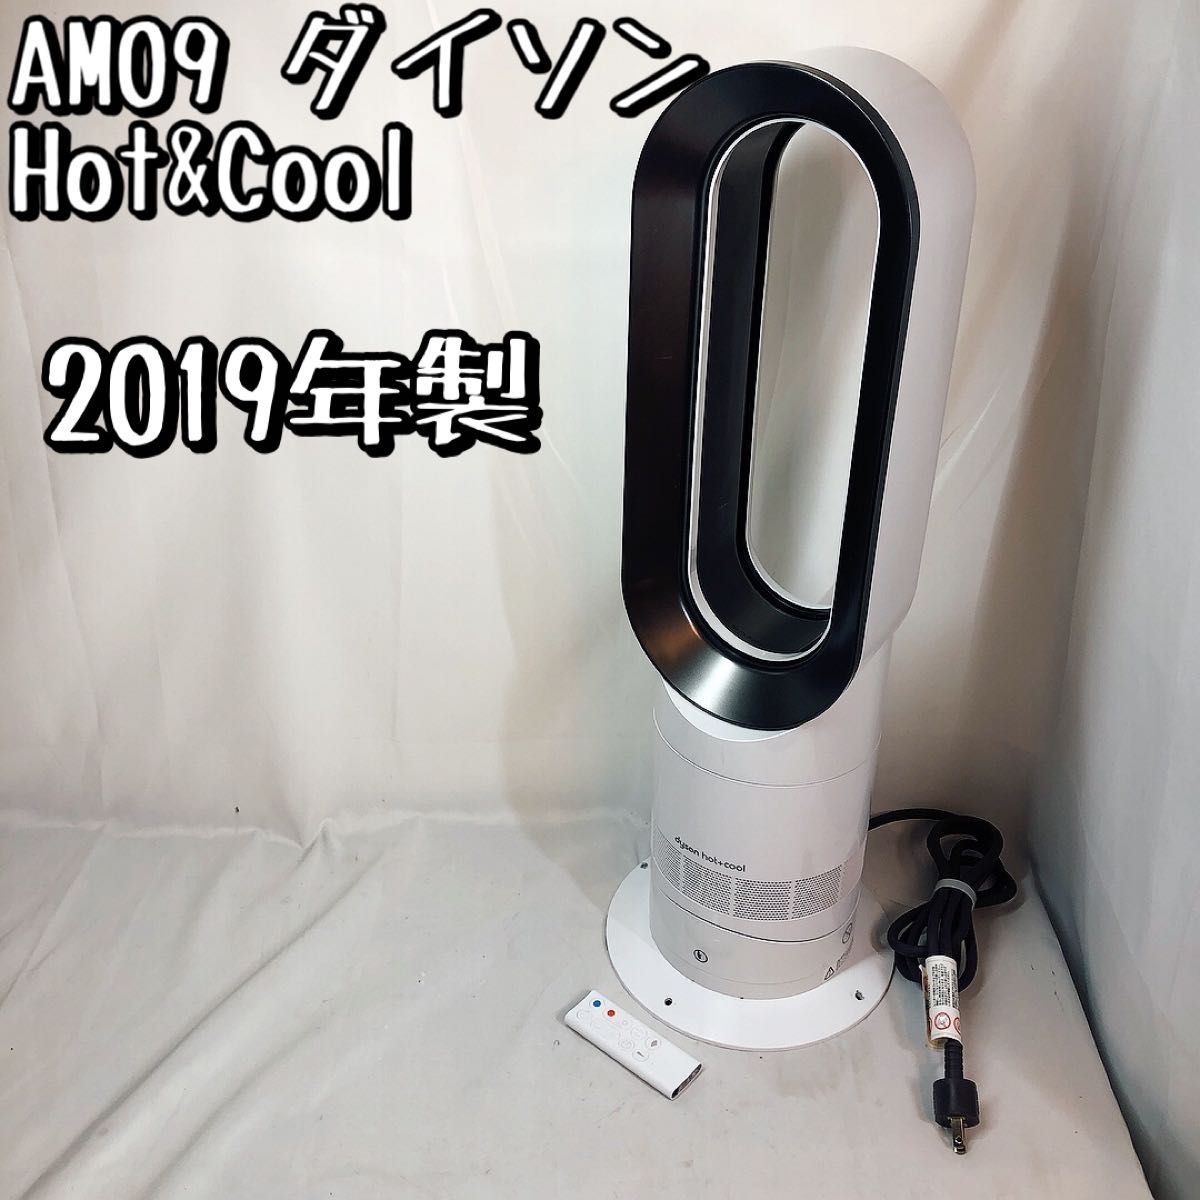 AM09 ダイソン ファンヒーター Hot&Cool ホワイト2019年製 dyson